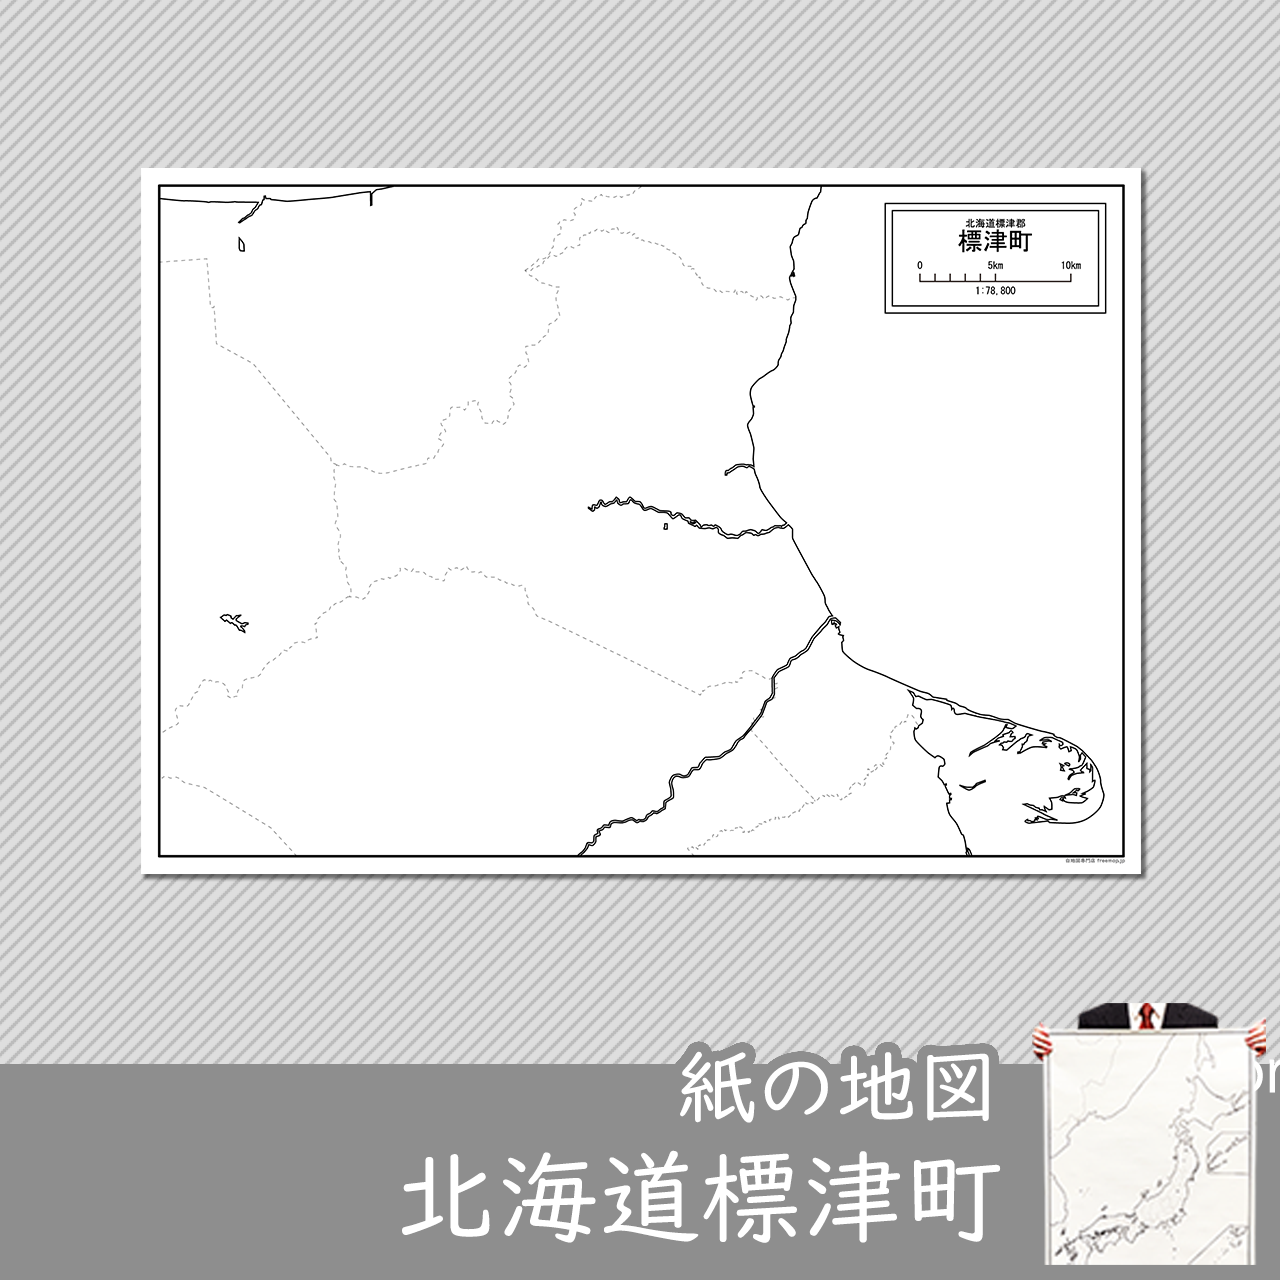 標津町の紙の白地図のサムネイル